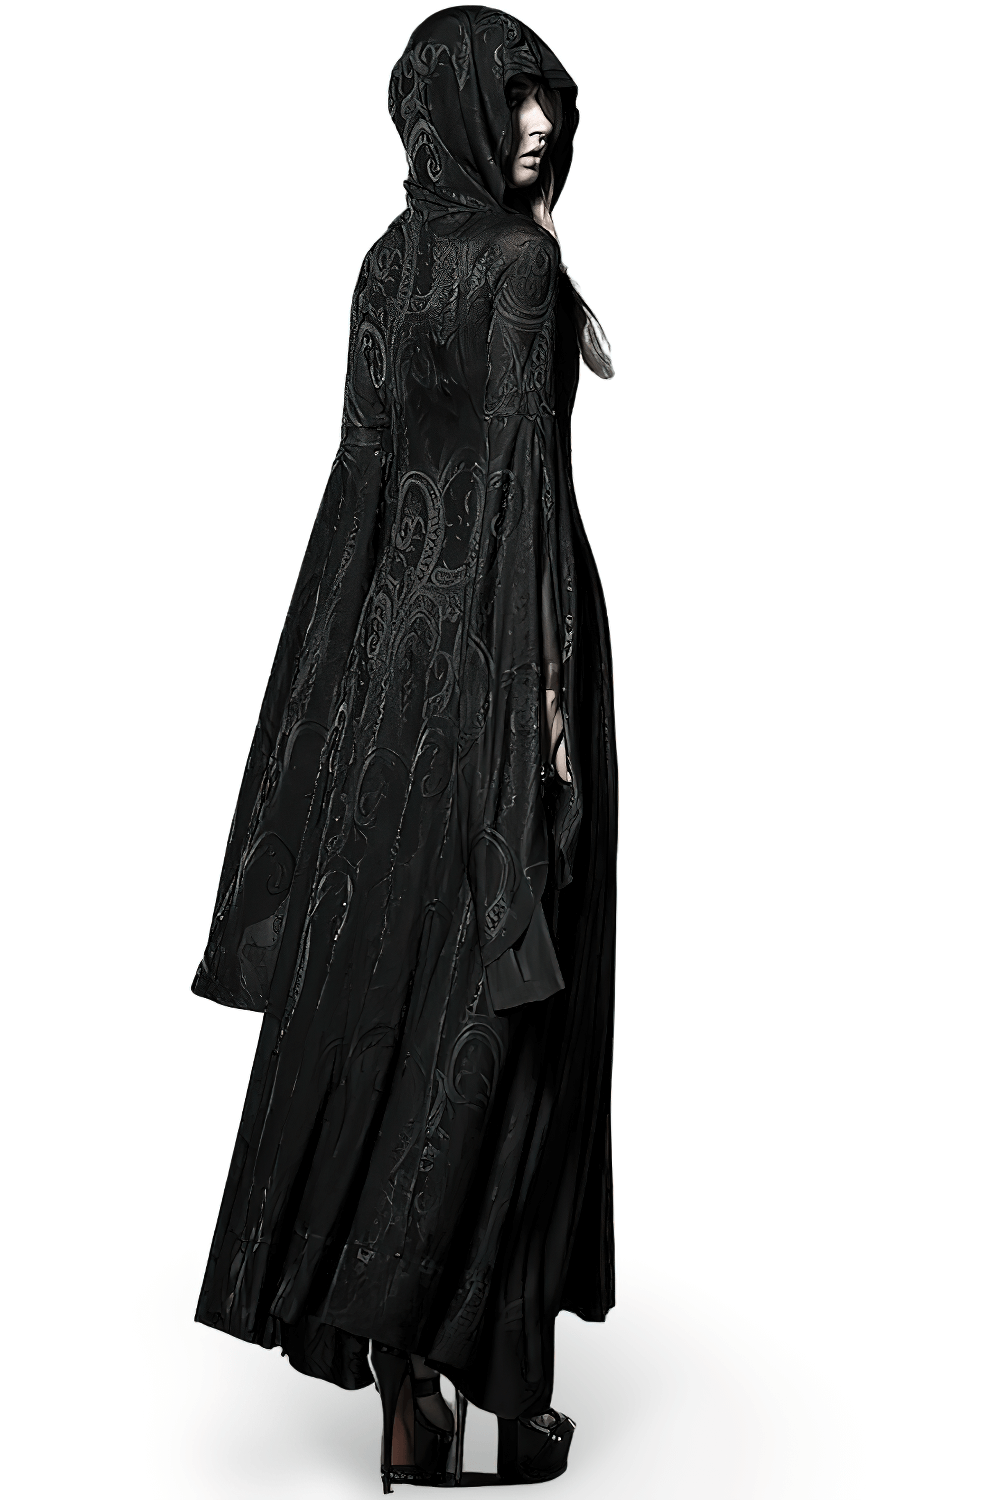 Abrigo gótico de terciopelo vintage con capucha para mujer